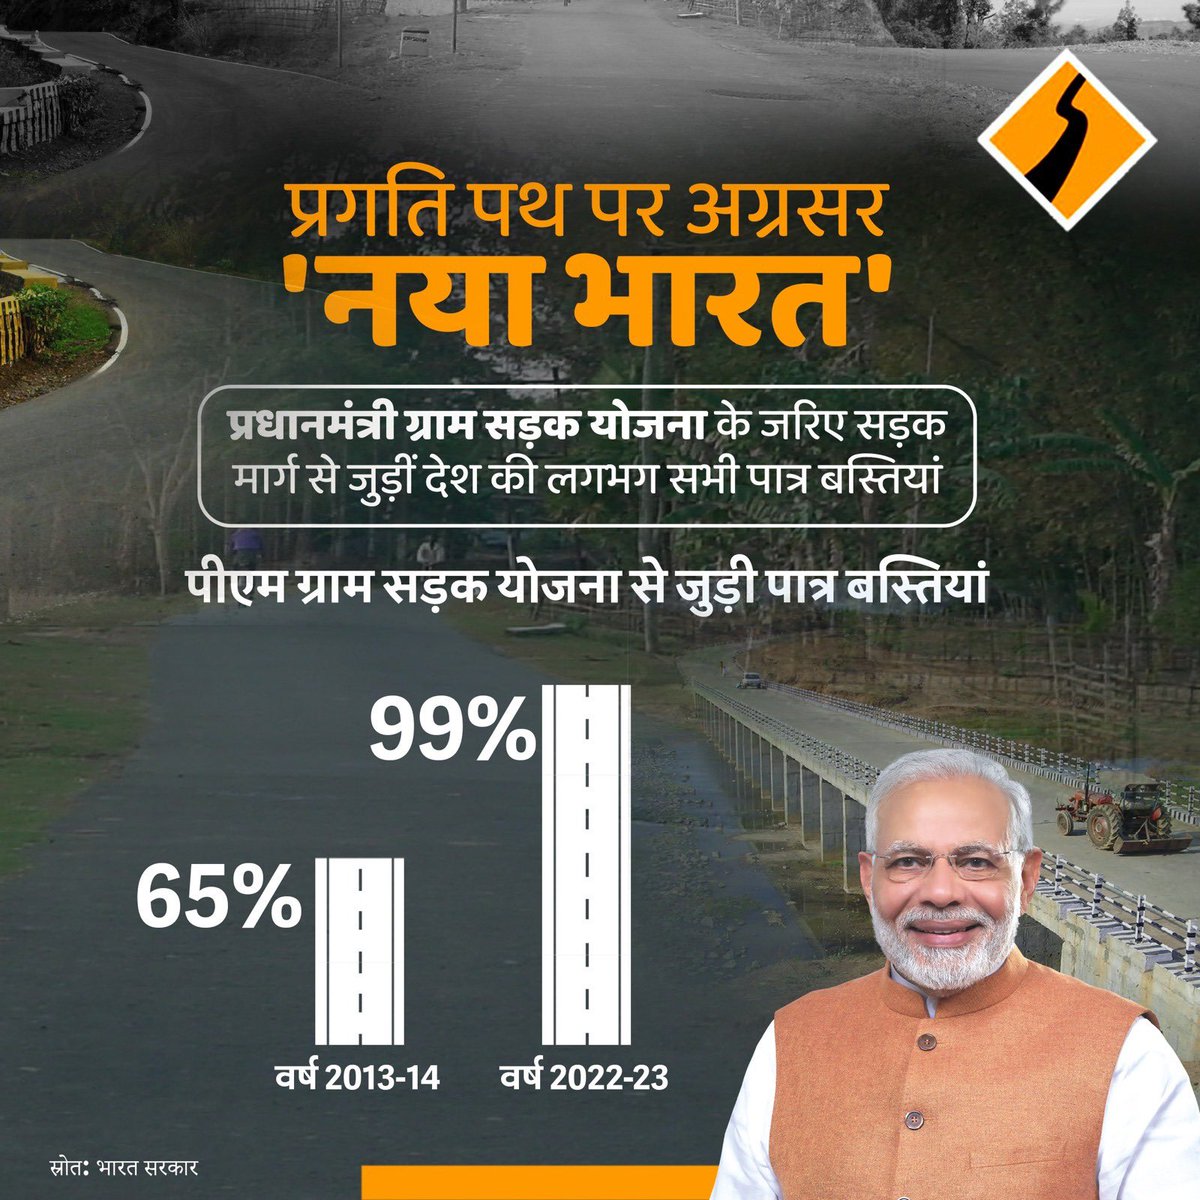 'प्रगति पथ पर नया भारत'

प्रधानमंत्री ग्राम सड़क योजना के जरिए सड़क मार्ग से जोड़ी जा चुकी हैं देश की 99% पात्र बस्तियां।

#NewIndia